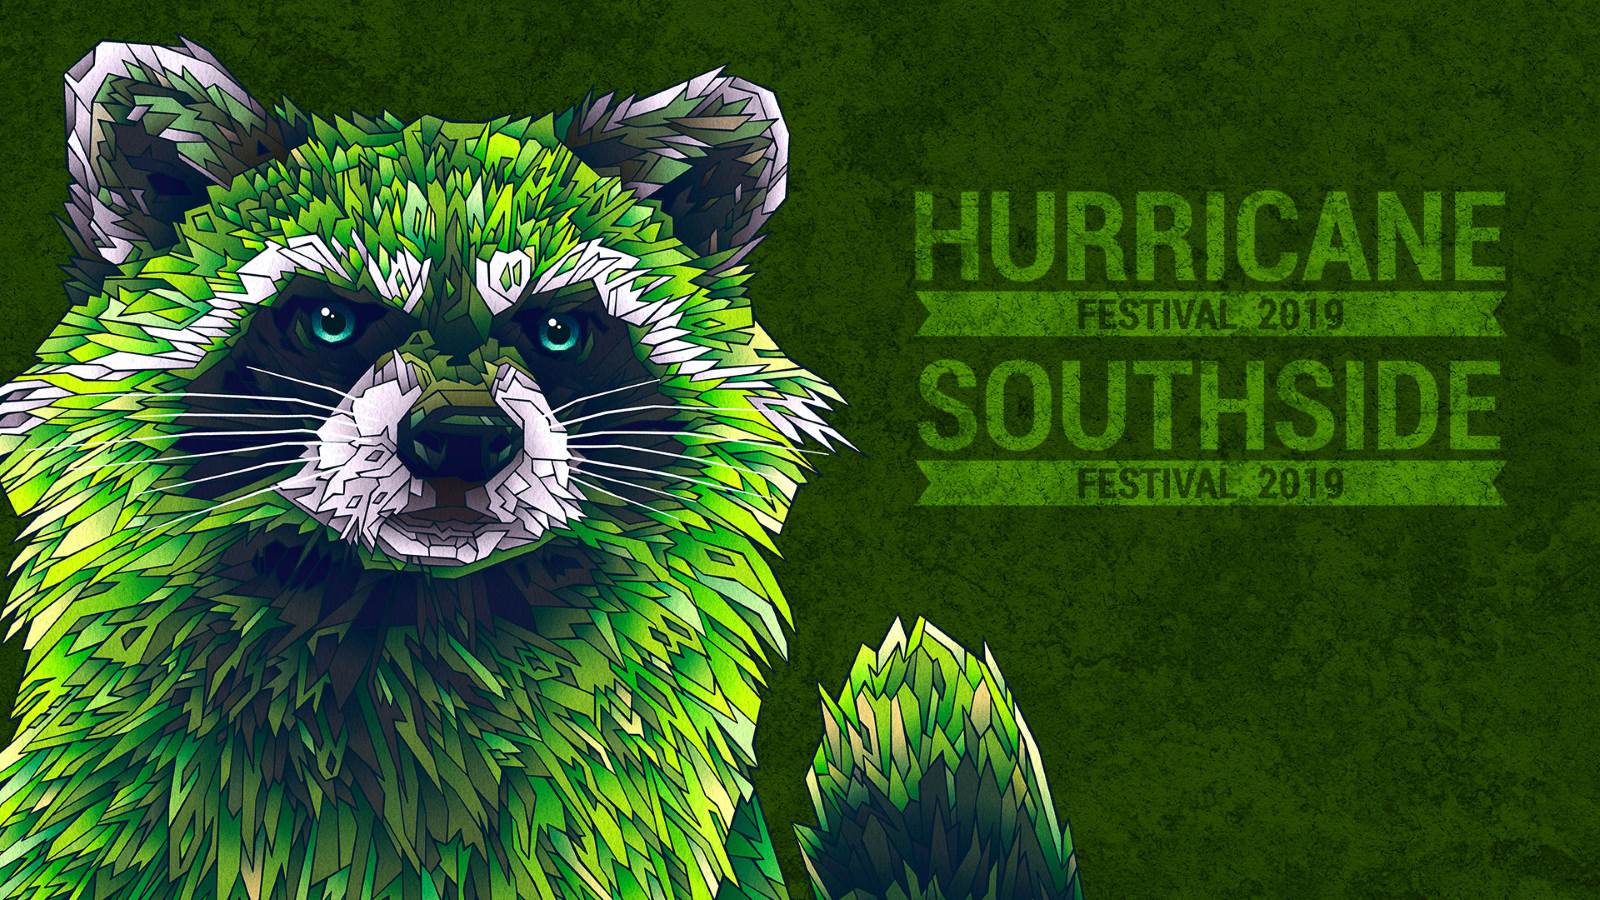 Hurricane und Southside Festival 2019 - Die ersten Bands